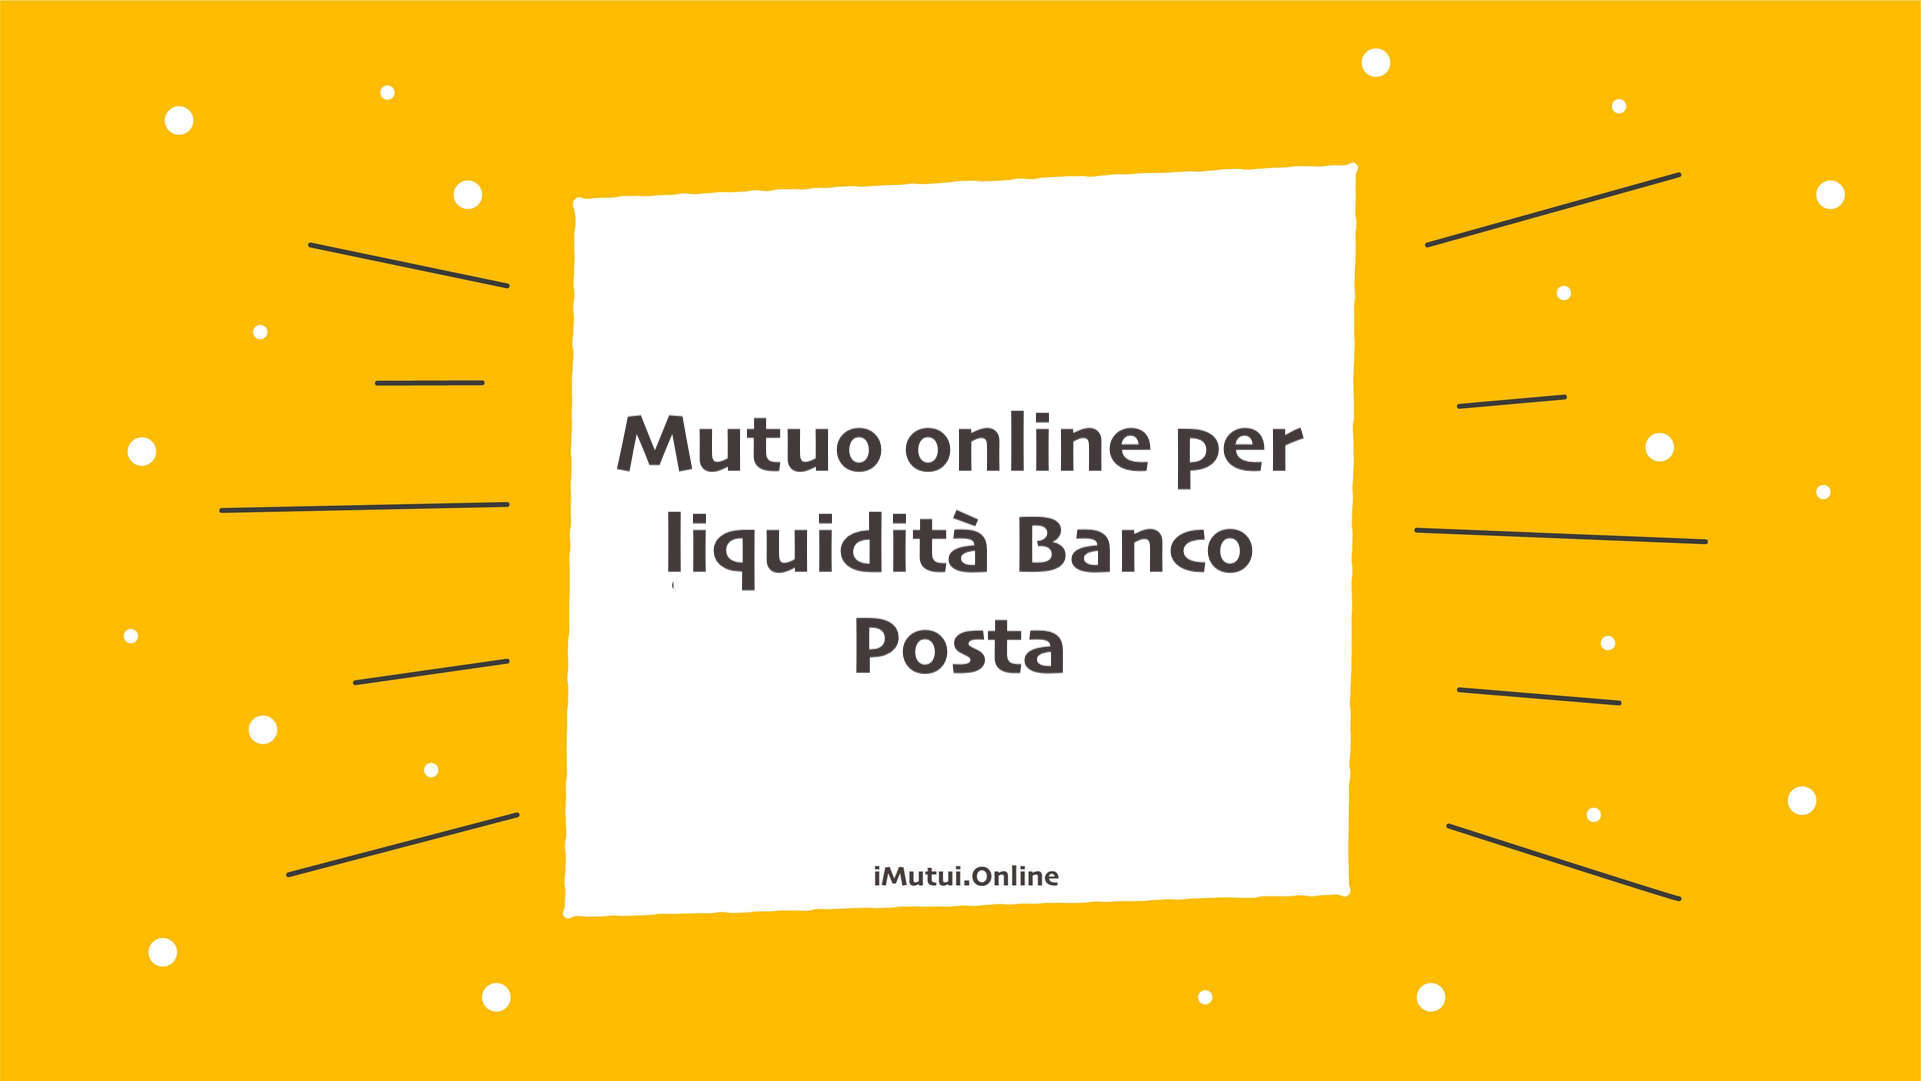 Mutuo online per liquidità Banco Posta